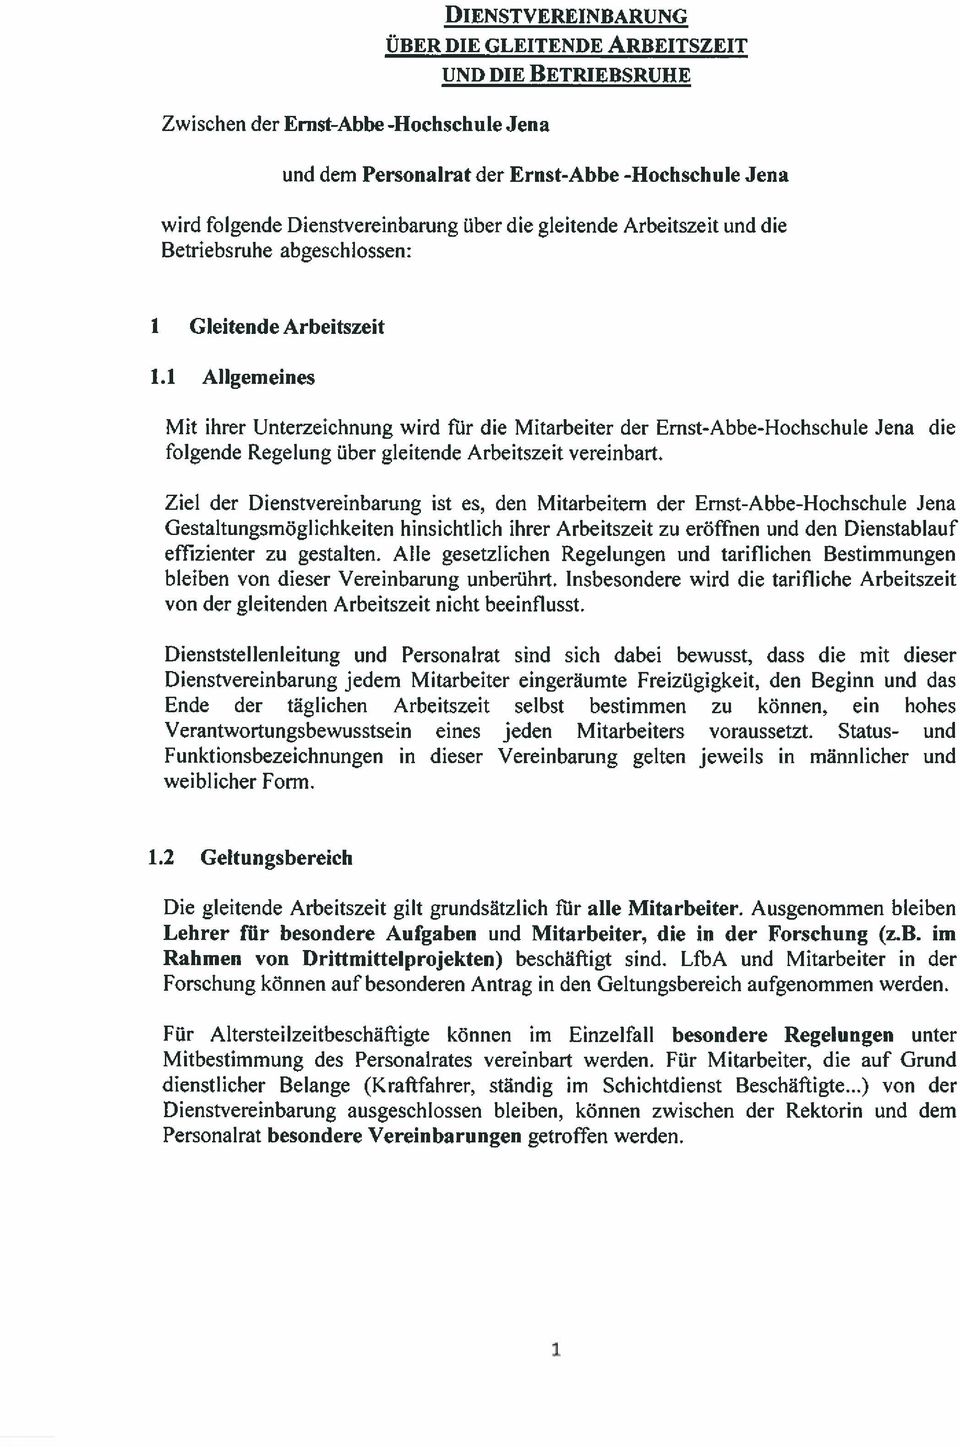 1 Allgemeines Mit ihrer Unterzeichnung wird für die Mitarbeiter der Ernst-Abbe-Hochschule Jena folgende Regelung über gleitende Arbeitszeit vereinbart.